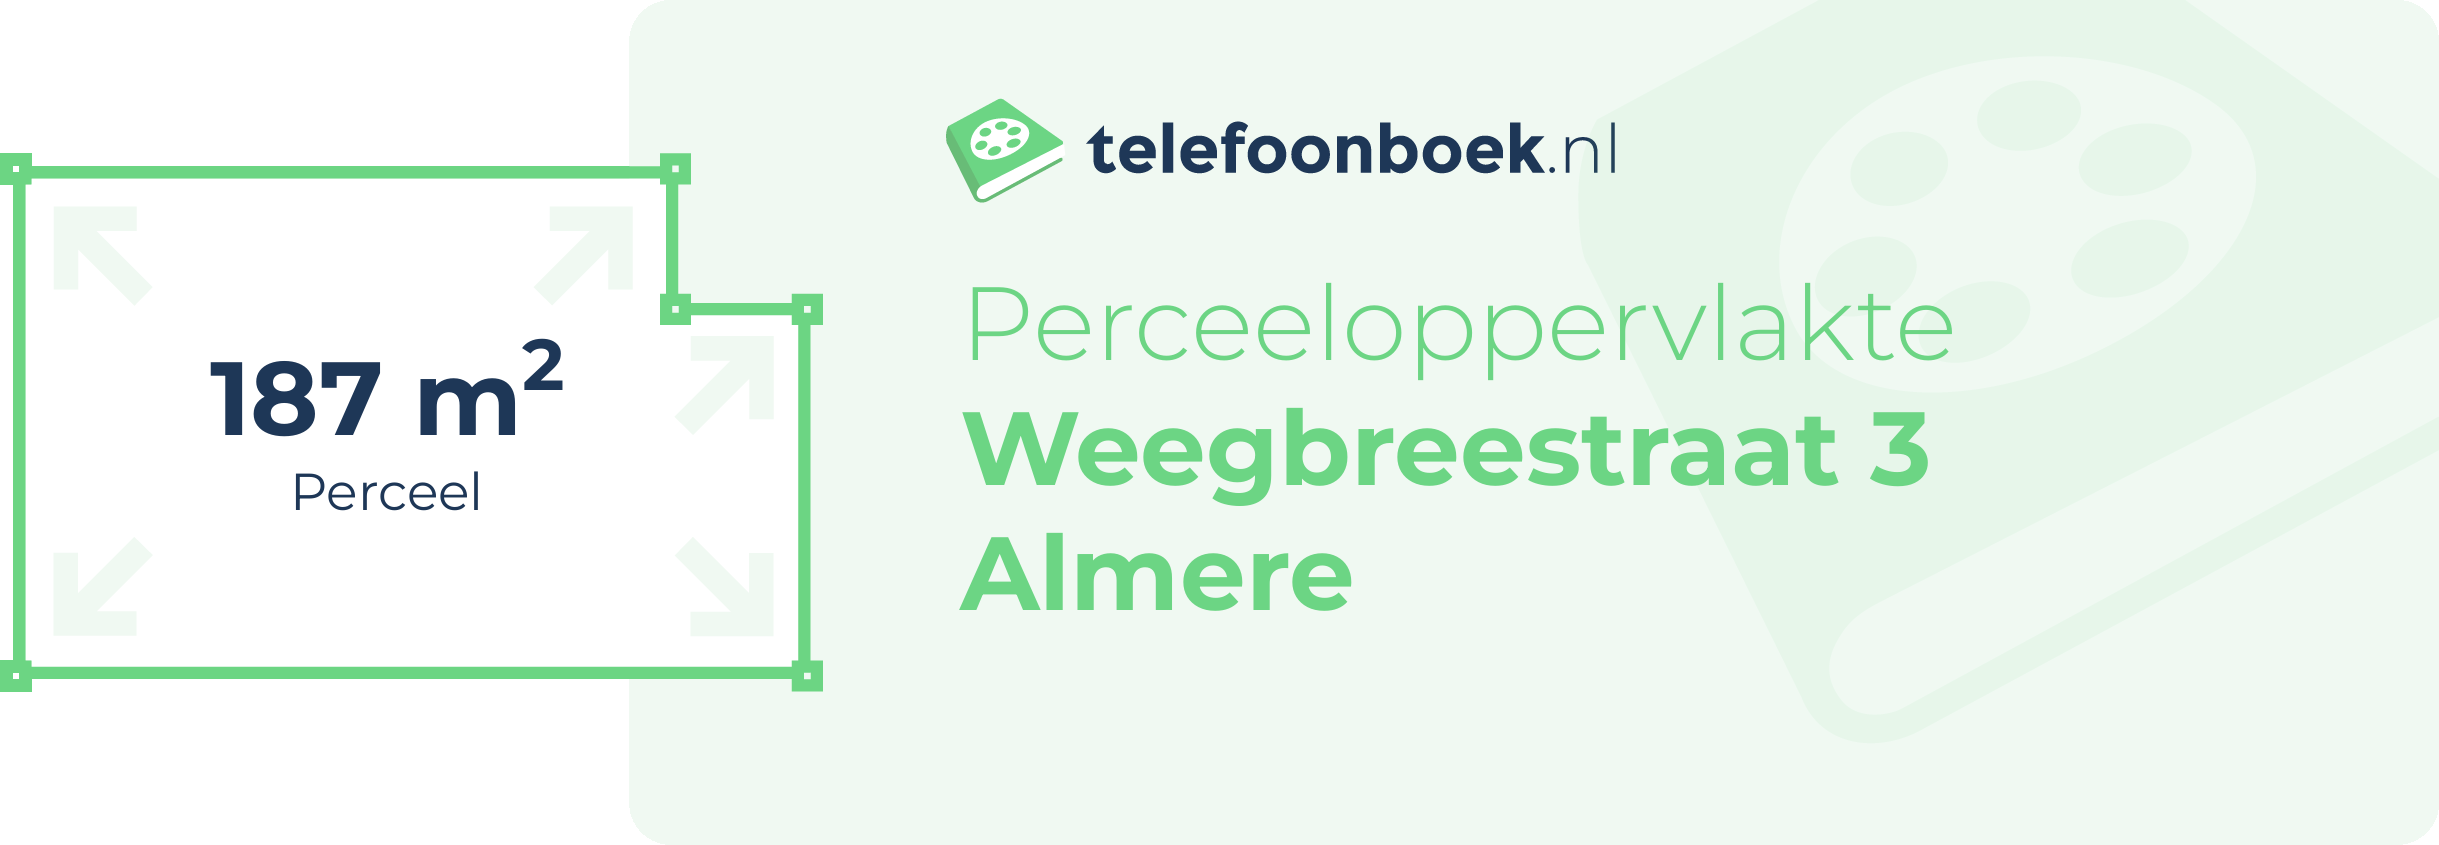 Perceeloppervlakte Weegbreestraat 3 Almere